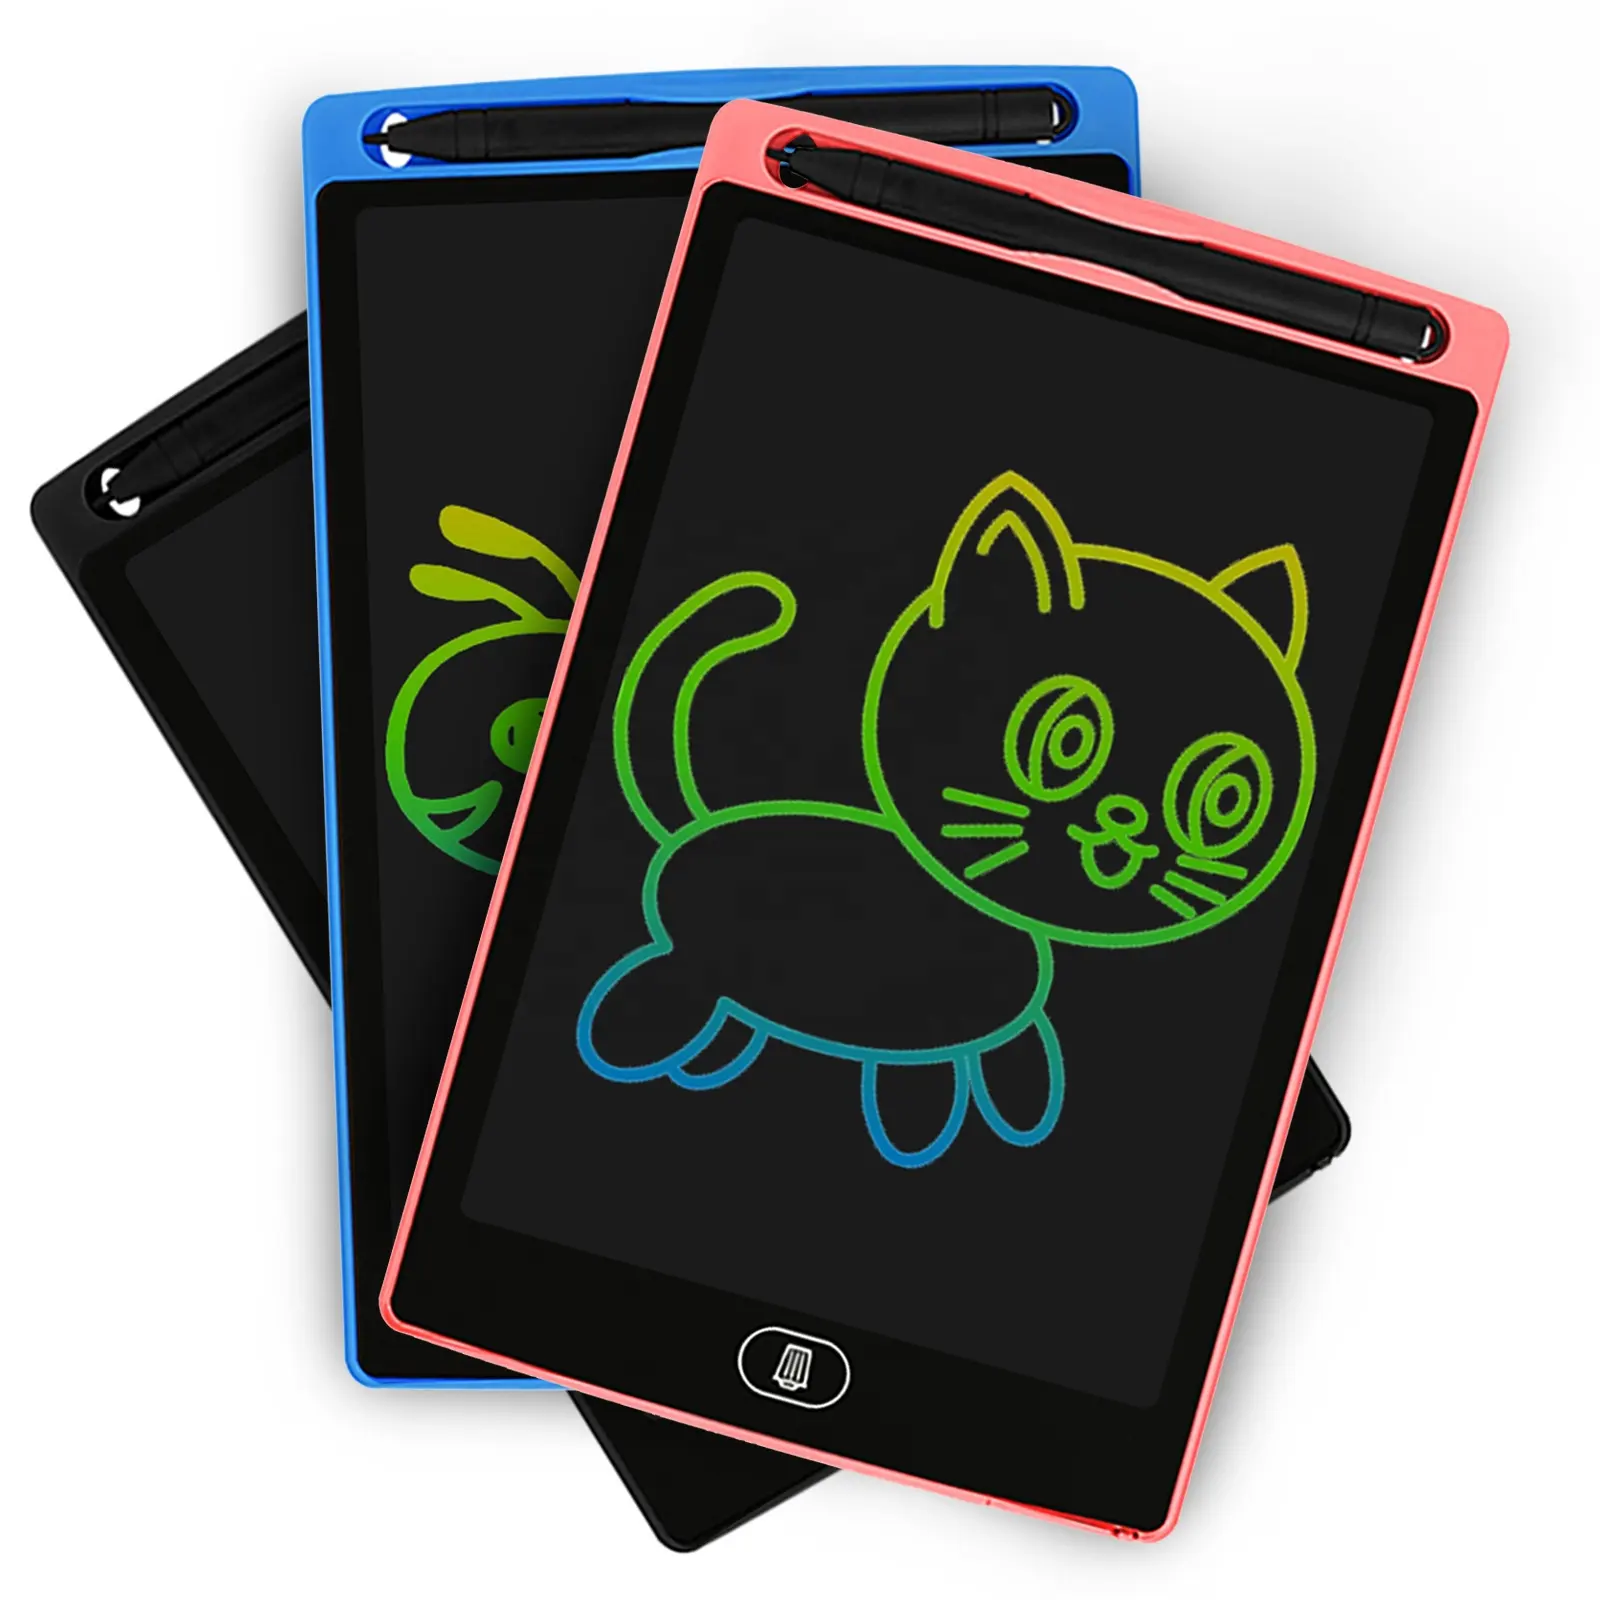 SUPERBOARD 8.5 pouces tableau noir magique pour enfants LCD électronique graphique écriture dessin doodle croquis gribouillage tablette conseil